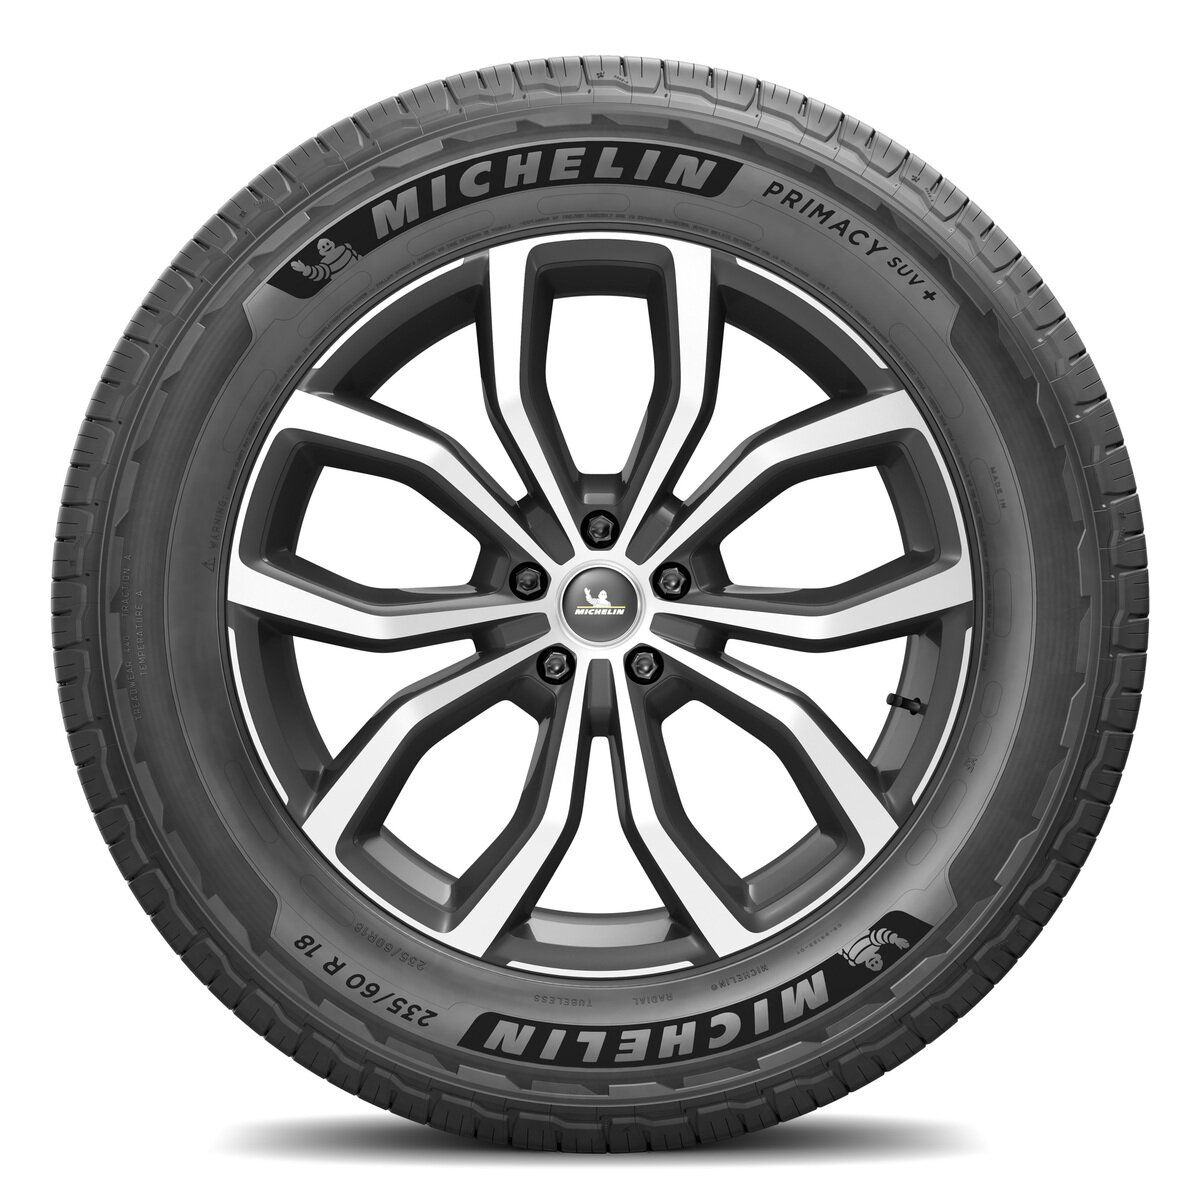 Michelin 235/65 R18 106H TL PRIMACY SUV+ MI